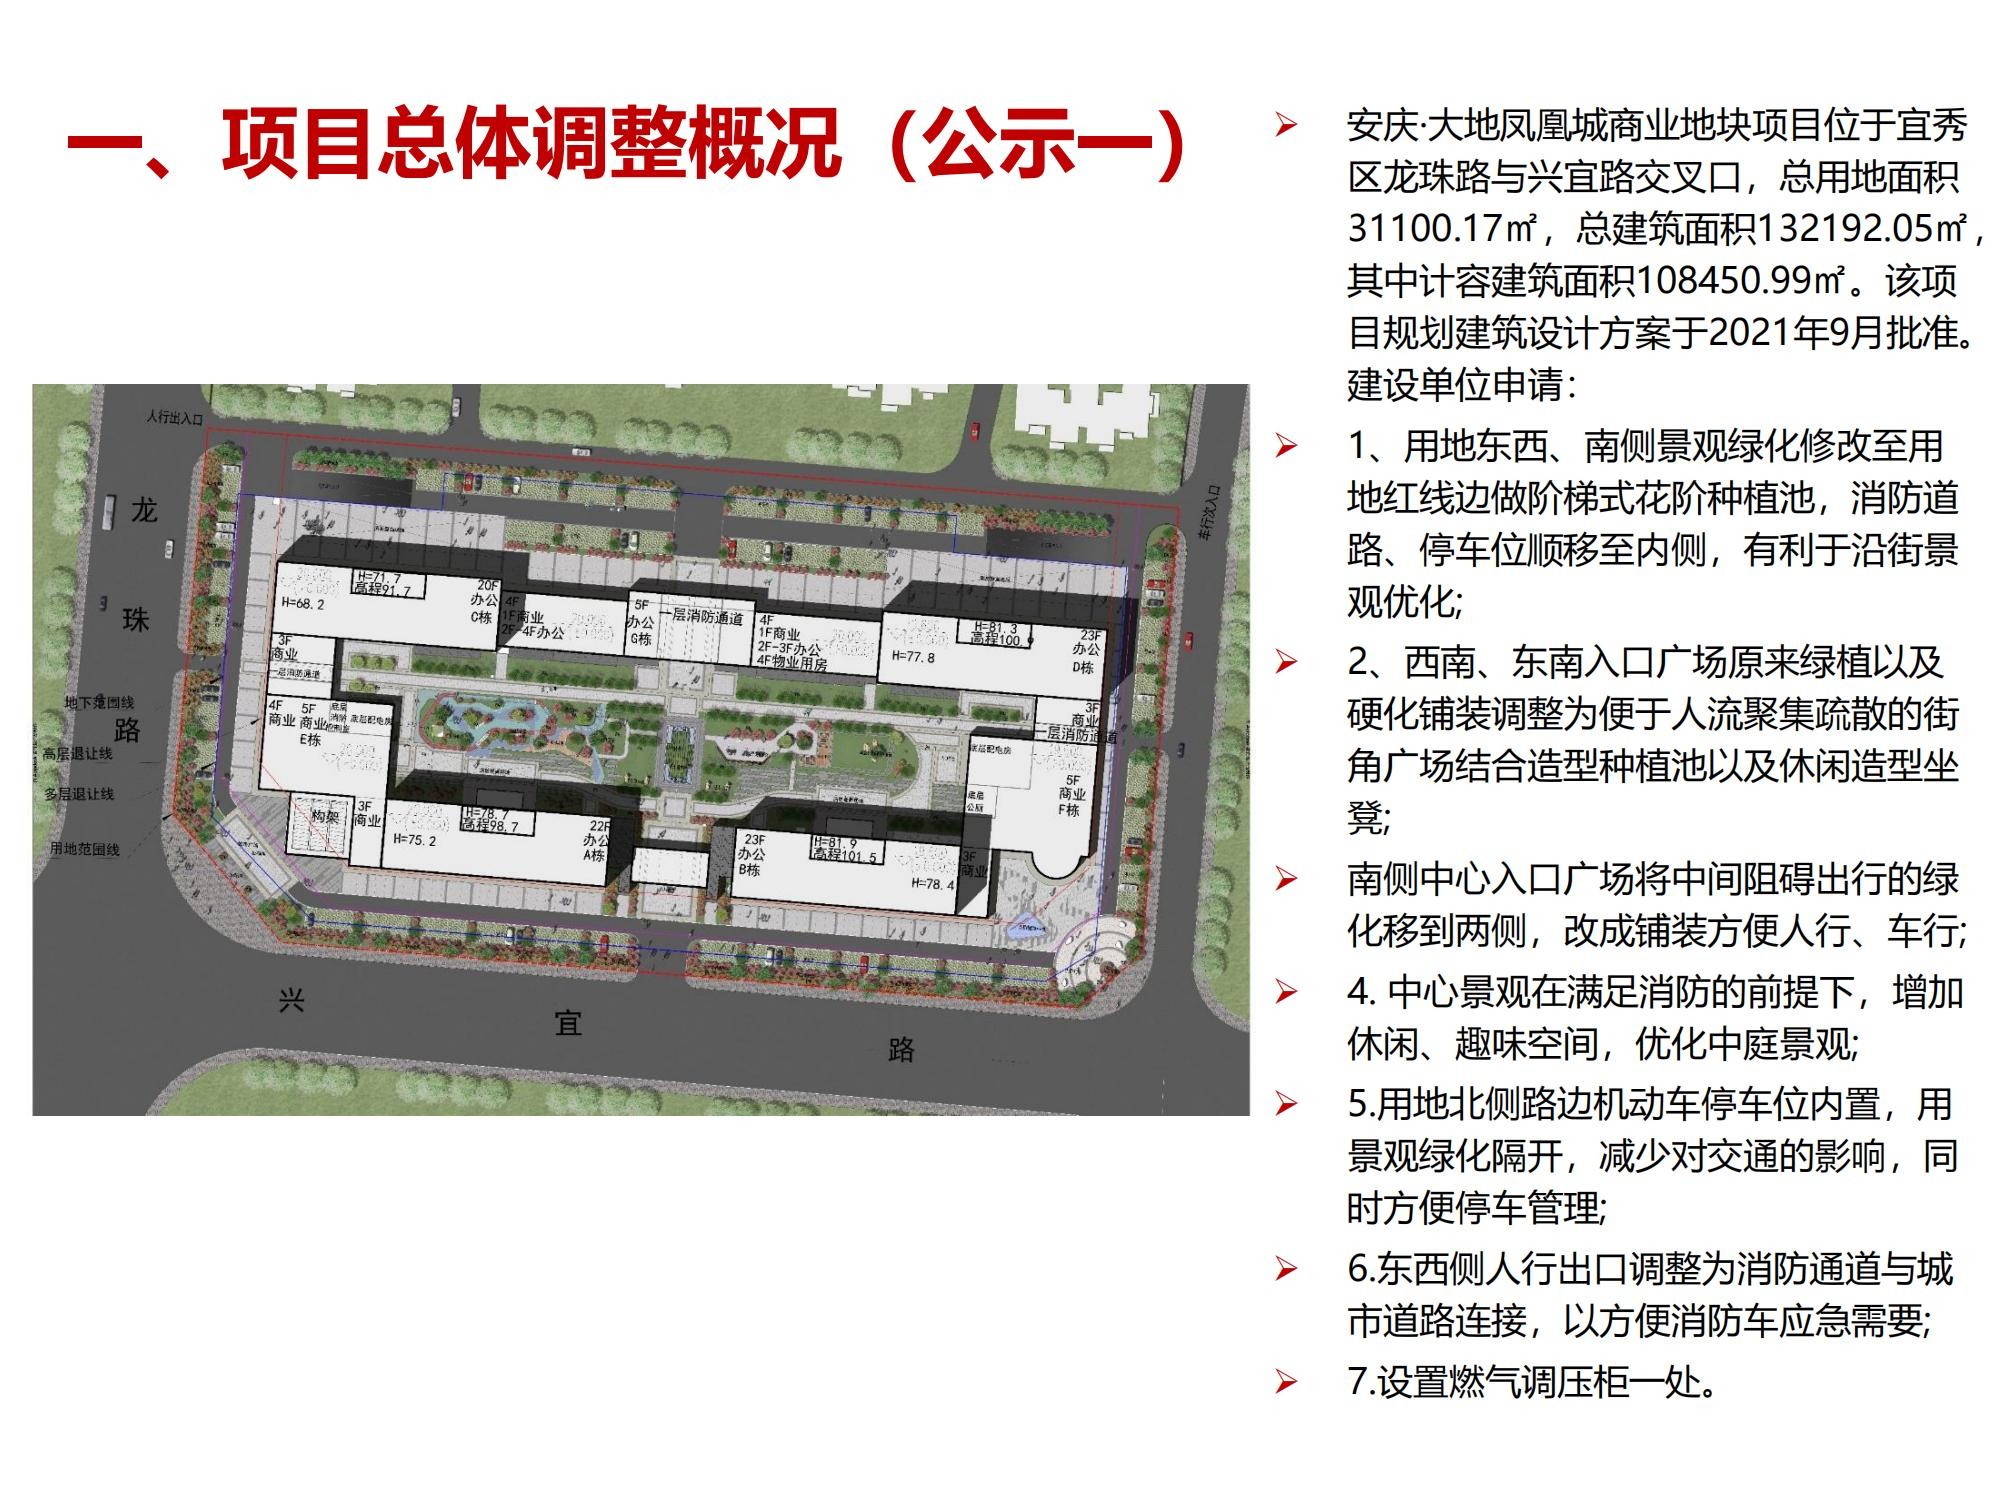 “安庆·大地凤凰城商业地块项目规划建筑设计方案调整”公示公告